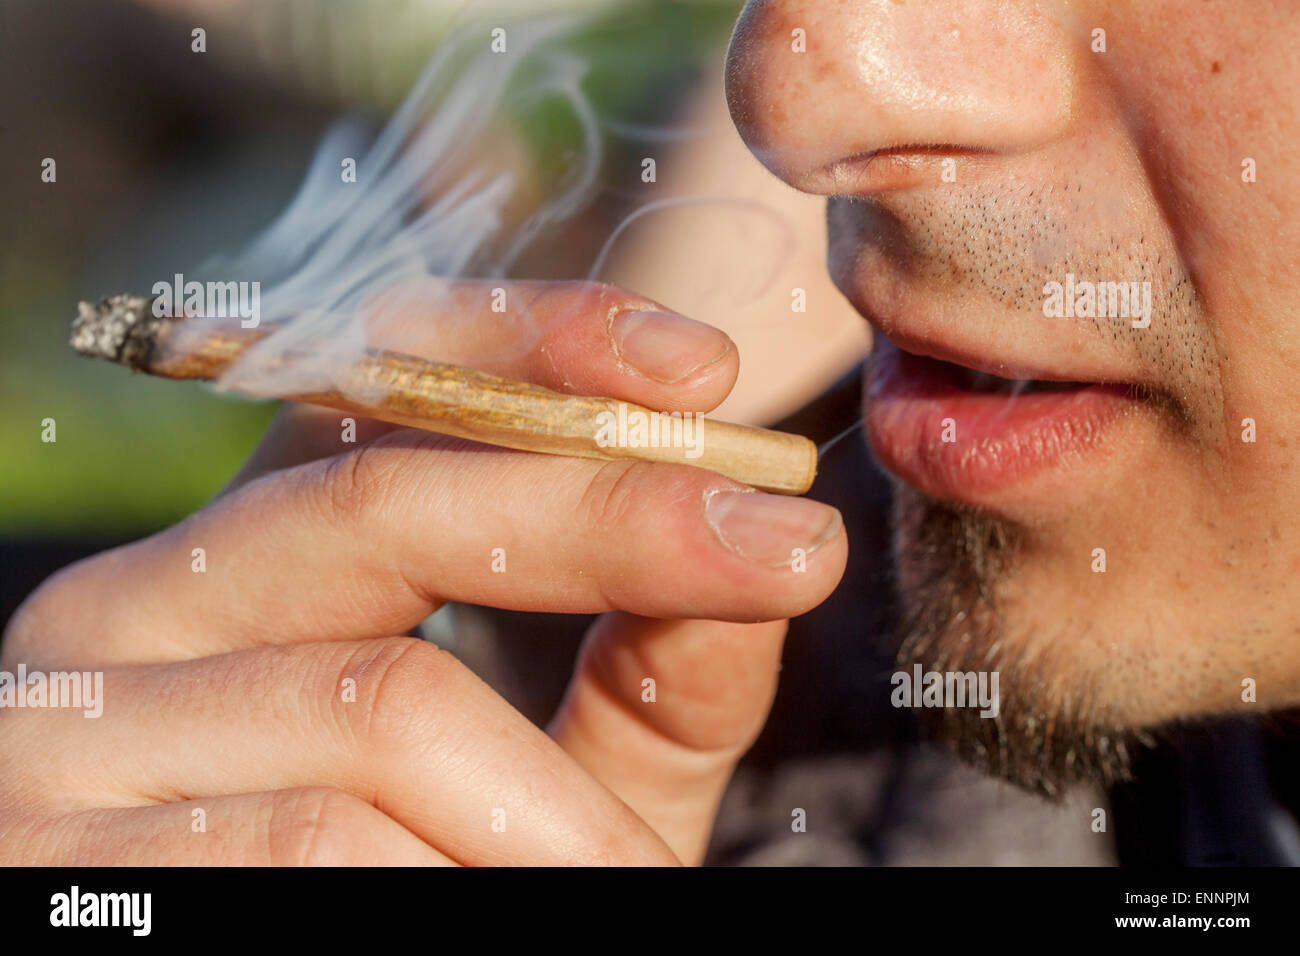 Cerca, el hombre común de fumar marihuana Foto de stock